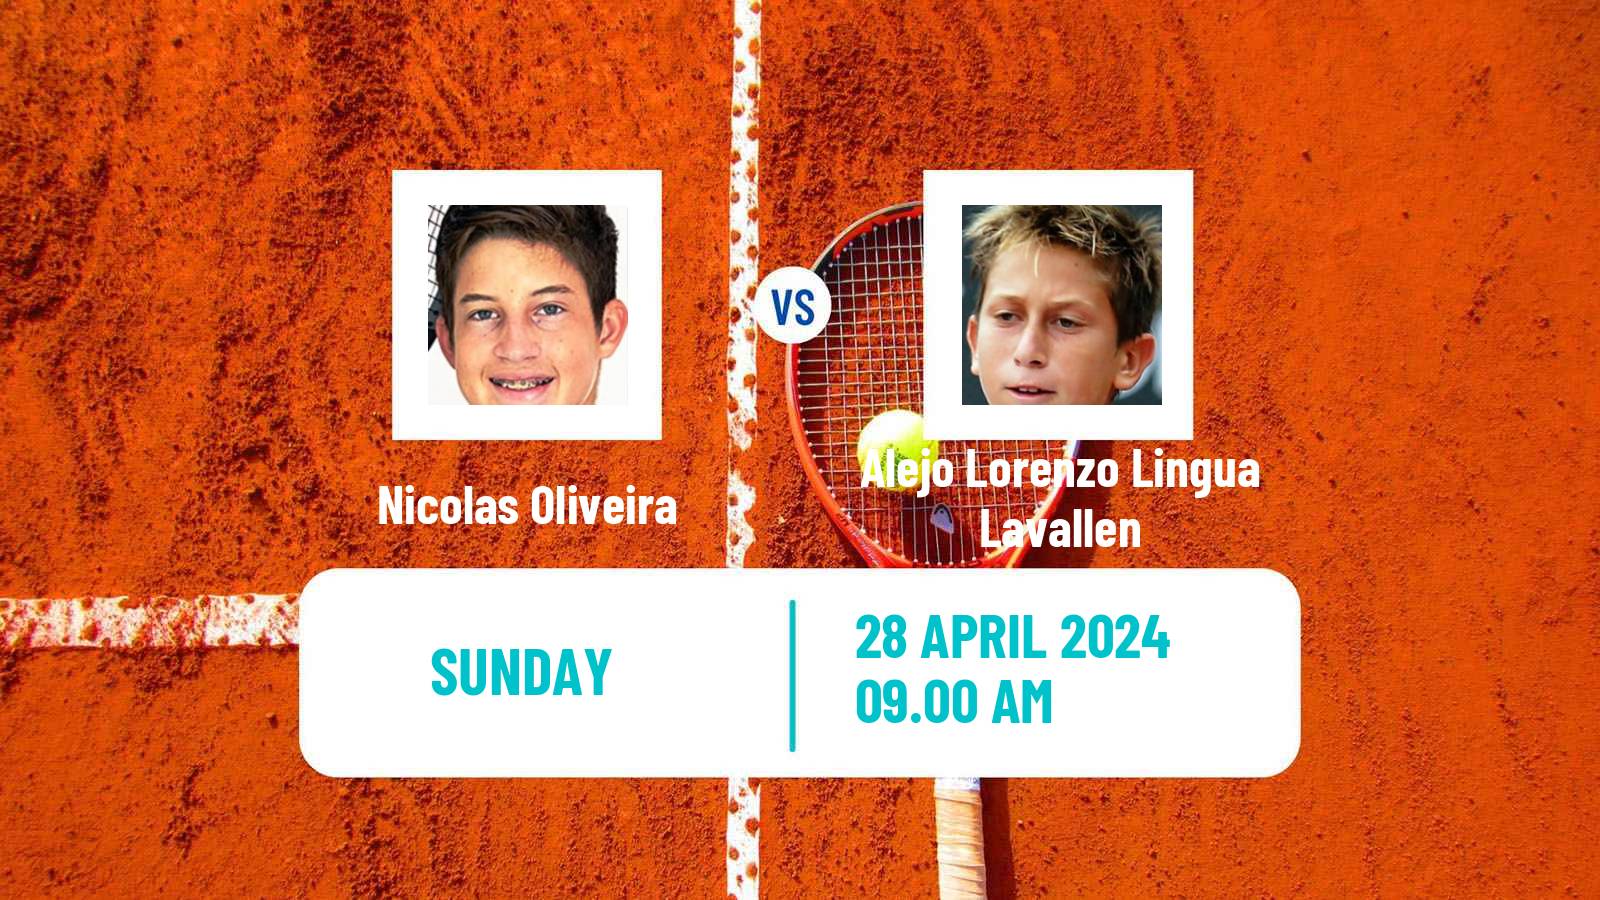 Tennis Porto Alegre Challenger Men Nicolas Oliveira - Alejo Lorenzo Lingua Lavallen